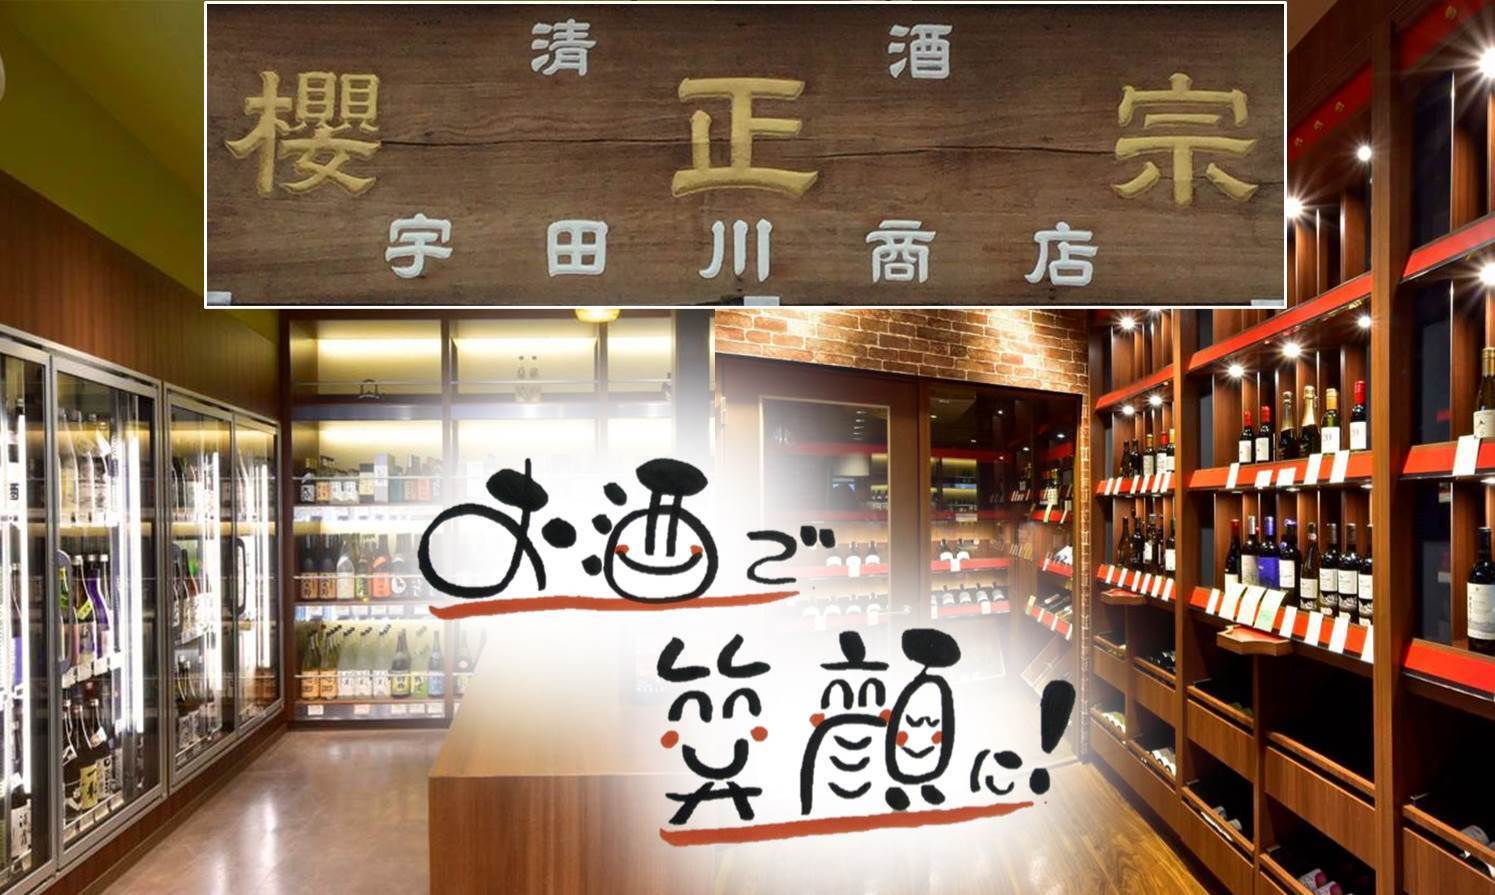 幻の酒「正宗」を全国で唯一販売している酒屋・宇田川商店